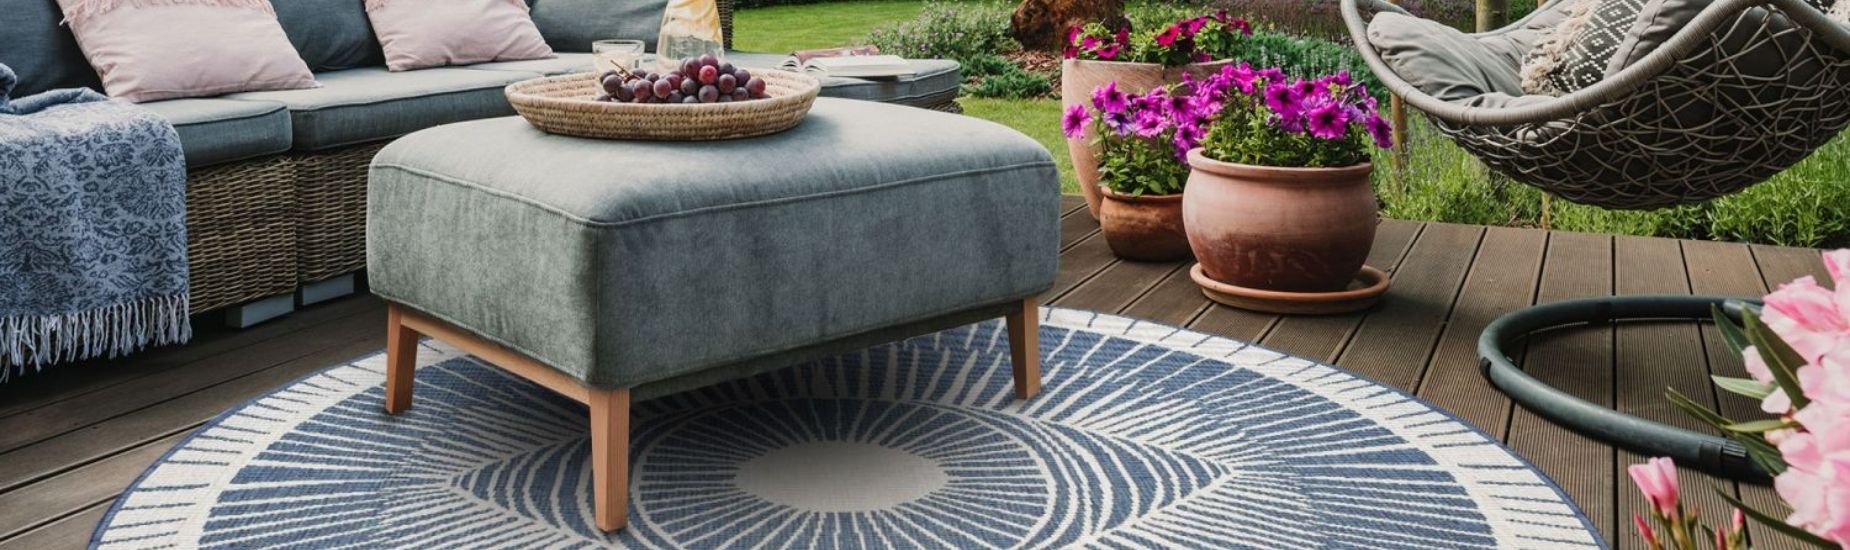 Tapis d'extérieur : le tapis indispensable pour votre terrasse, balcon et  jardin - Inspiration Luxe